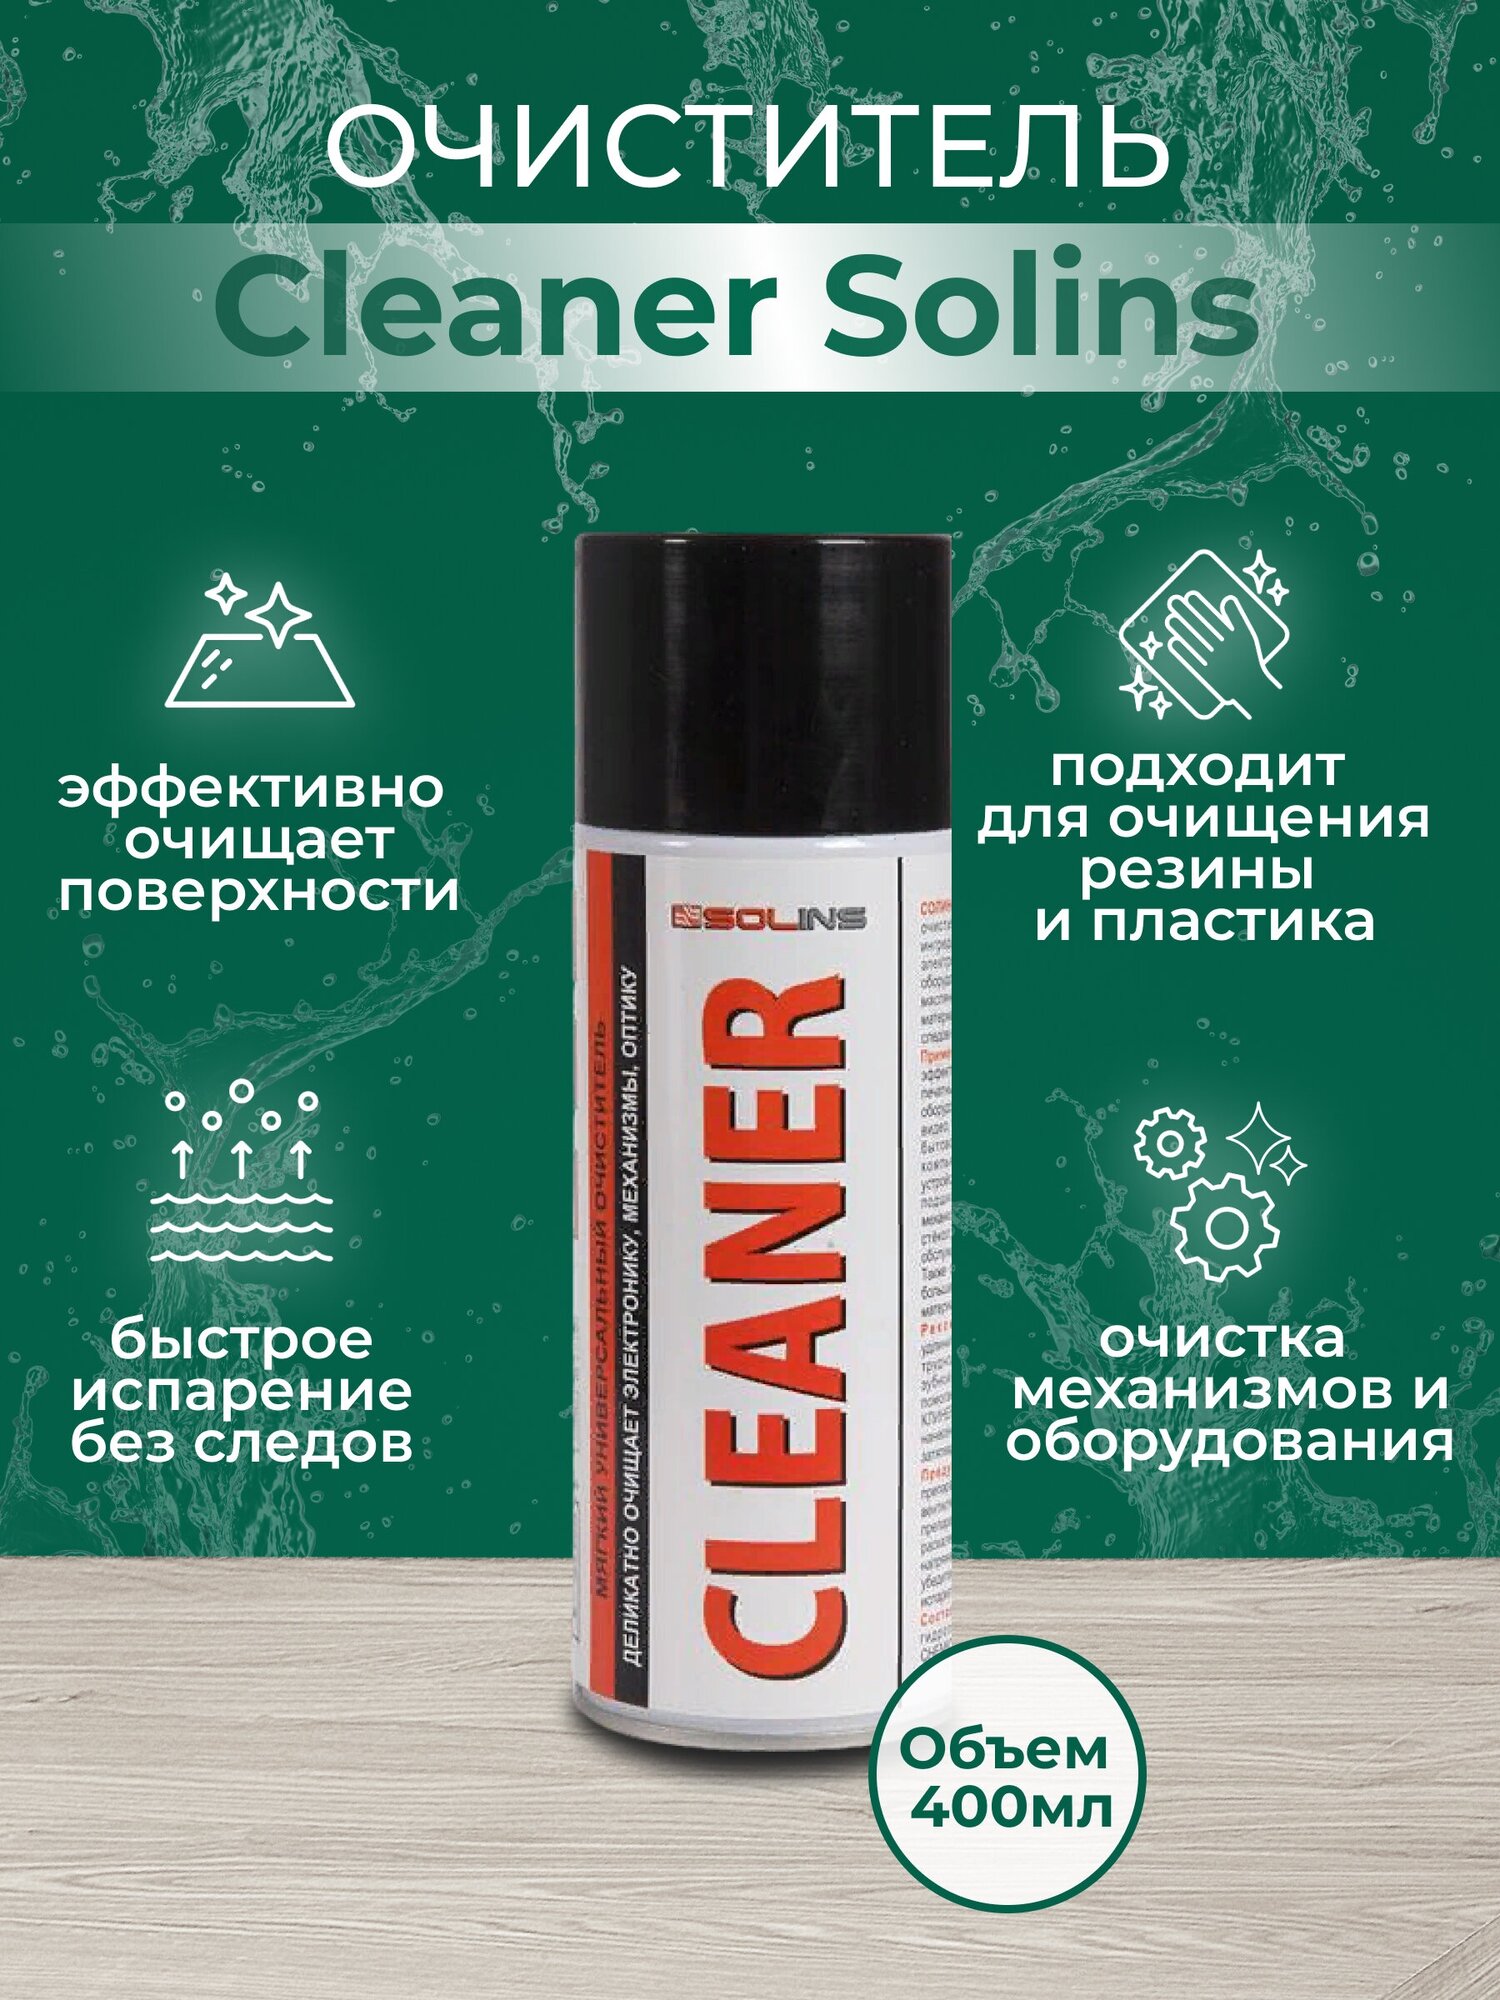 Очиститель Cleaner Solins, объем 400 мл — купить в интернет-магазине по низкой цене на Яндекс Маркете